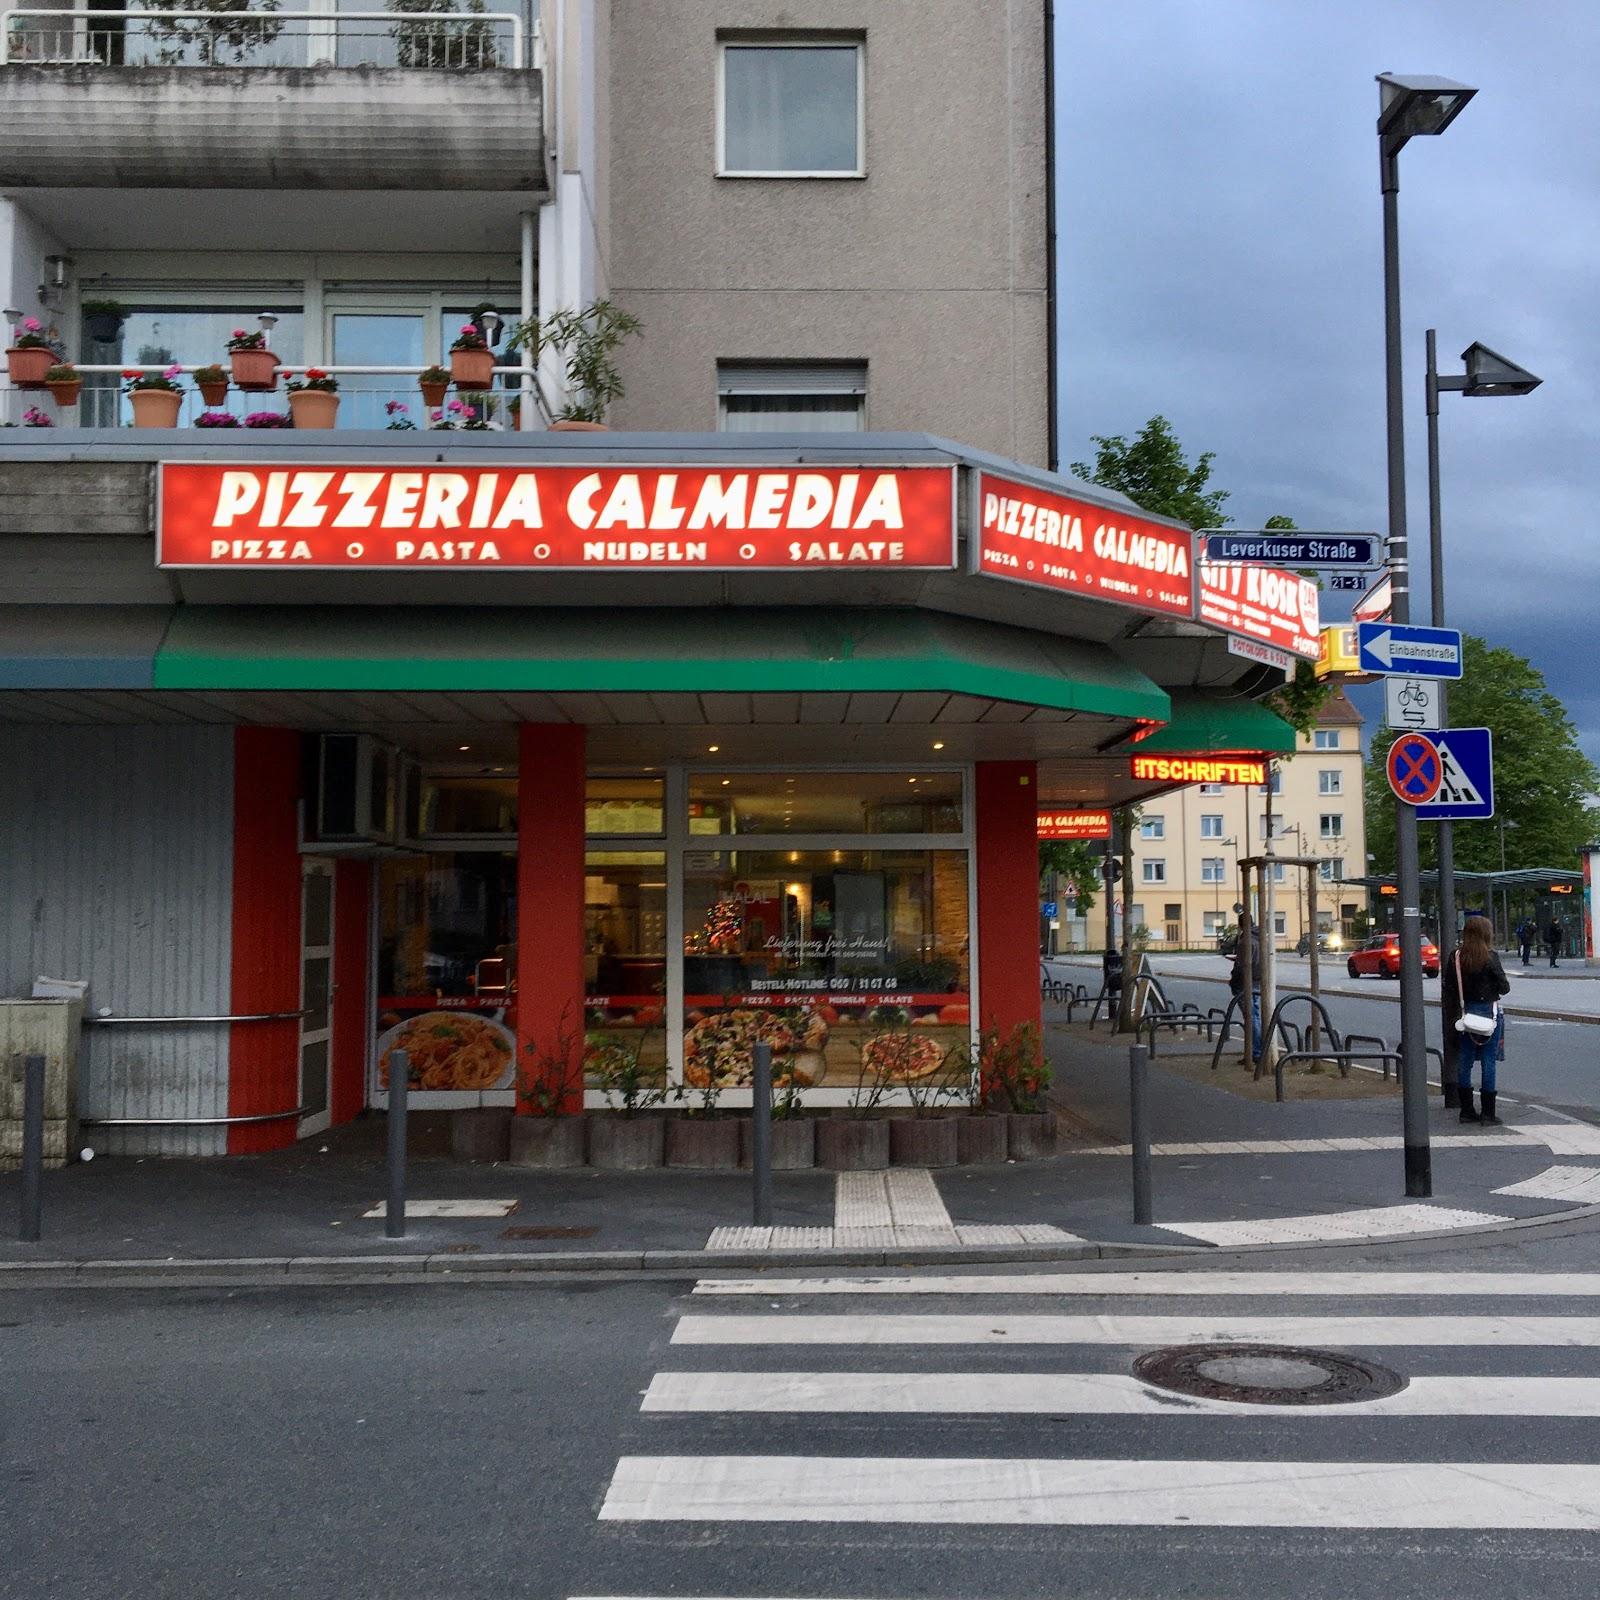 Restaurant "Pizzeria Calmedia" in Frankfurt am Main